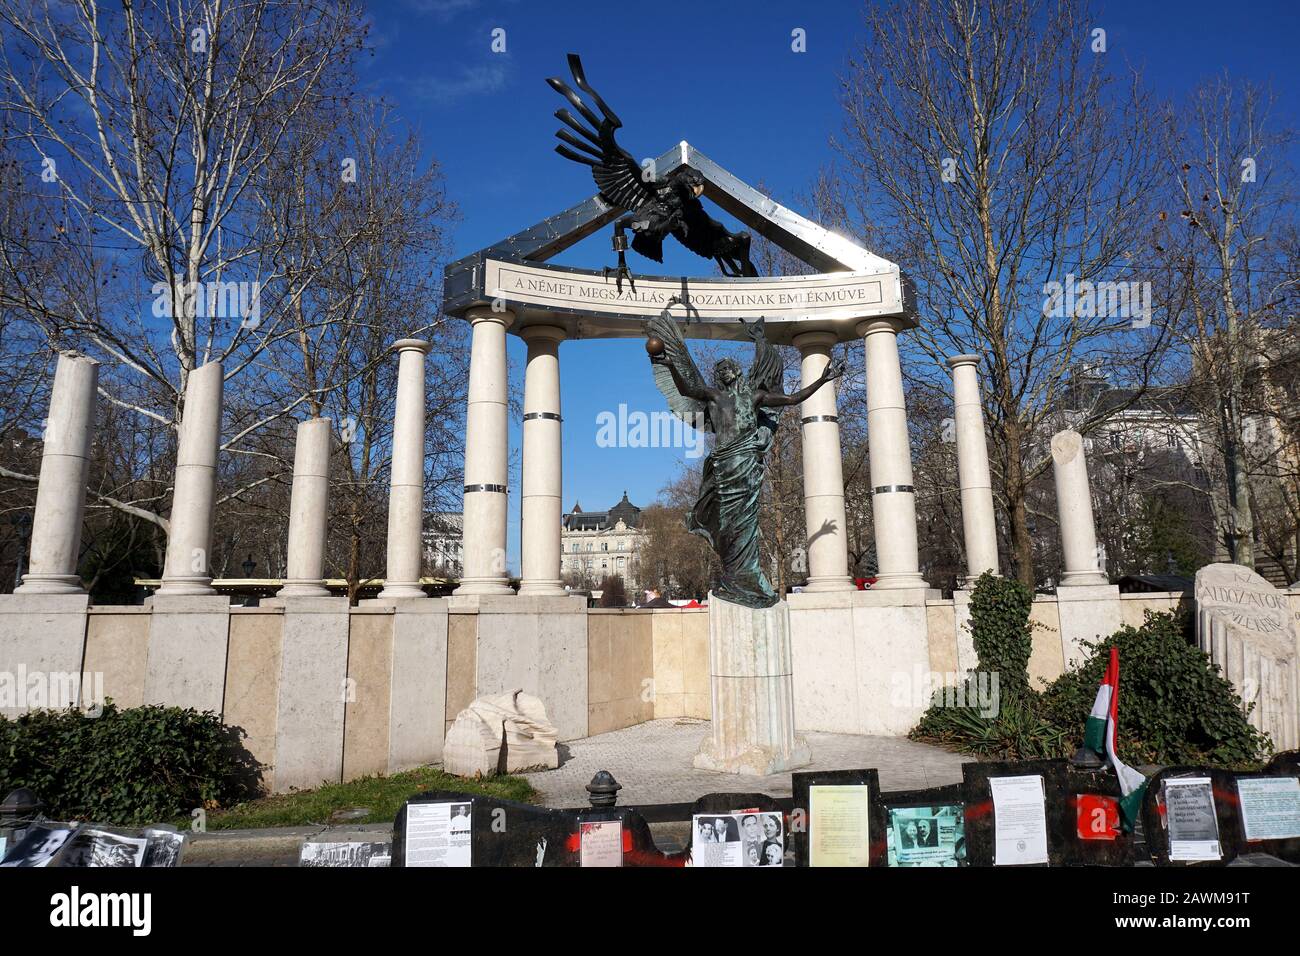 Monument d'occupation allemand, place de la liberté, 5ème arrondissement, Budapest, Hongrie, Magyarország, Europe, német megszállási emlékmű Banque D'Images